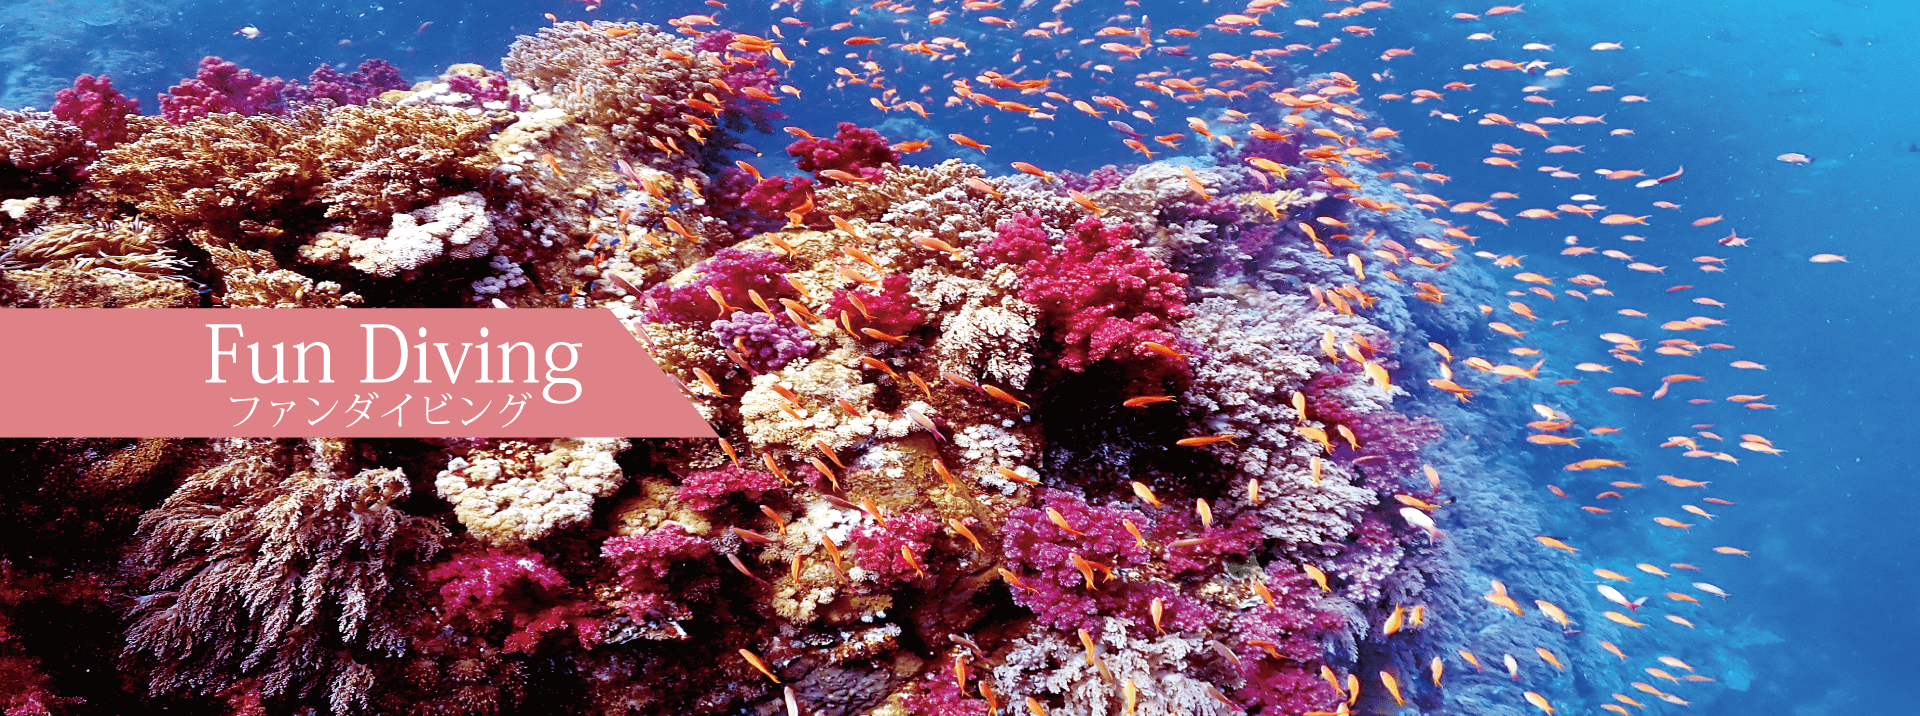 国立公園特別保護地域、横島の風景。一面のサンゴ群生、カラフルな沢山の魚。